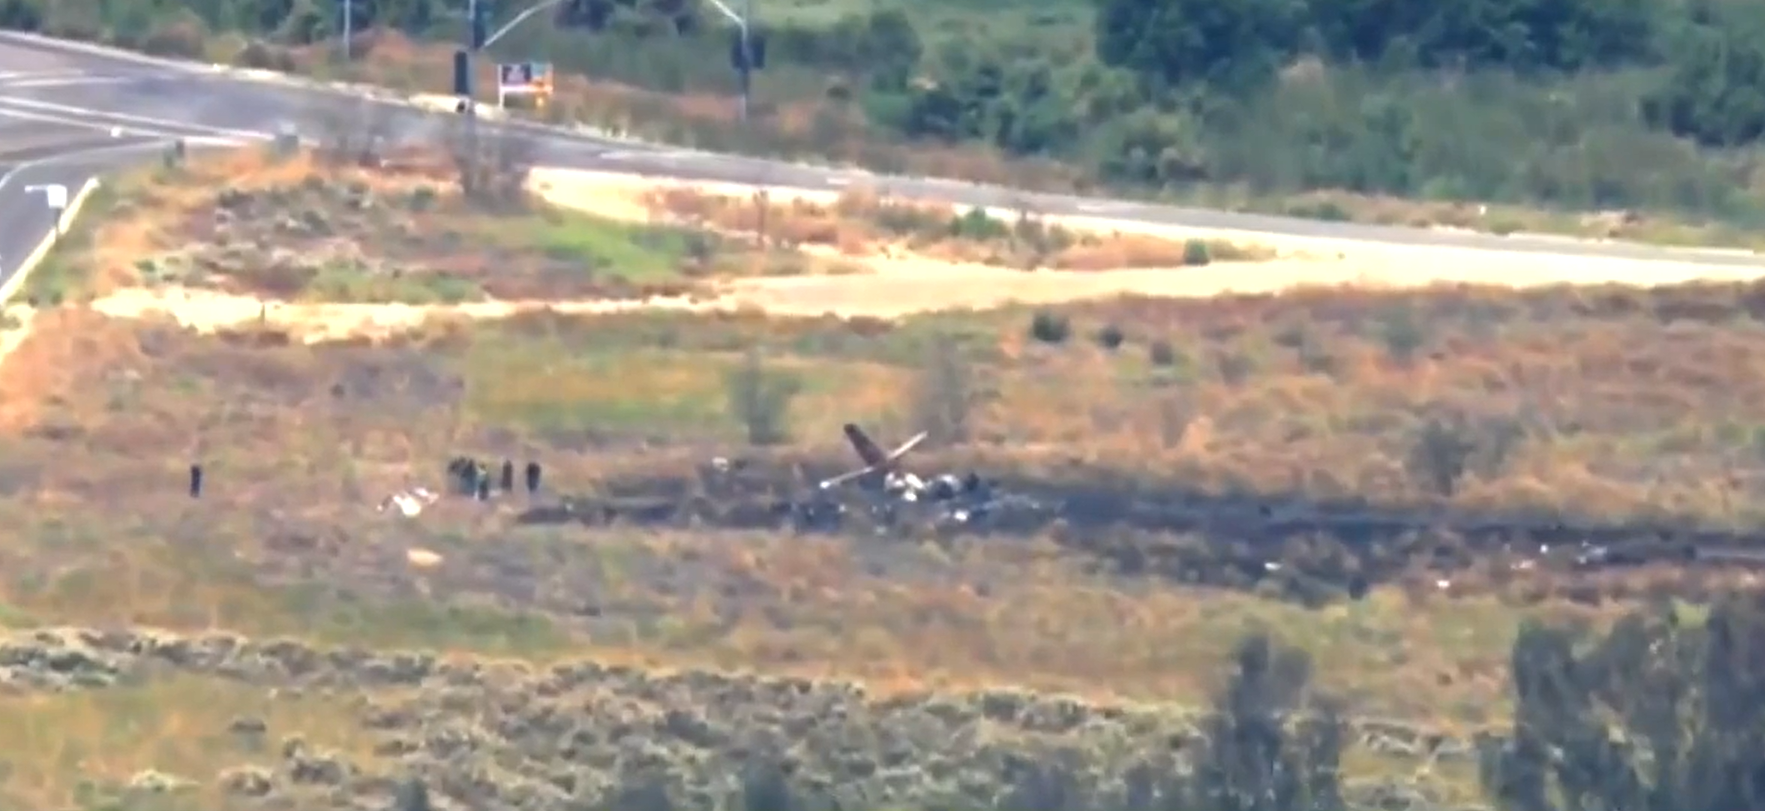 Hình ảnh cắt ra ra từ đoạn video được truyền thông địa phương công bố cho thấy, chiếc máy bay cỡ nhỏ bị cháy đen